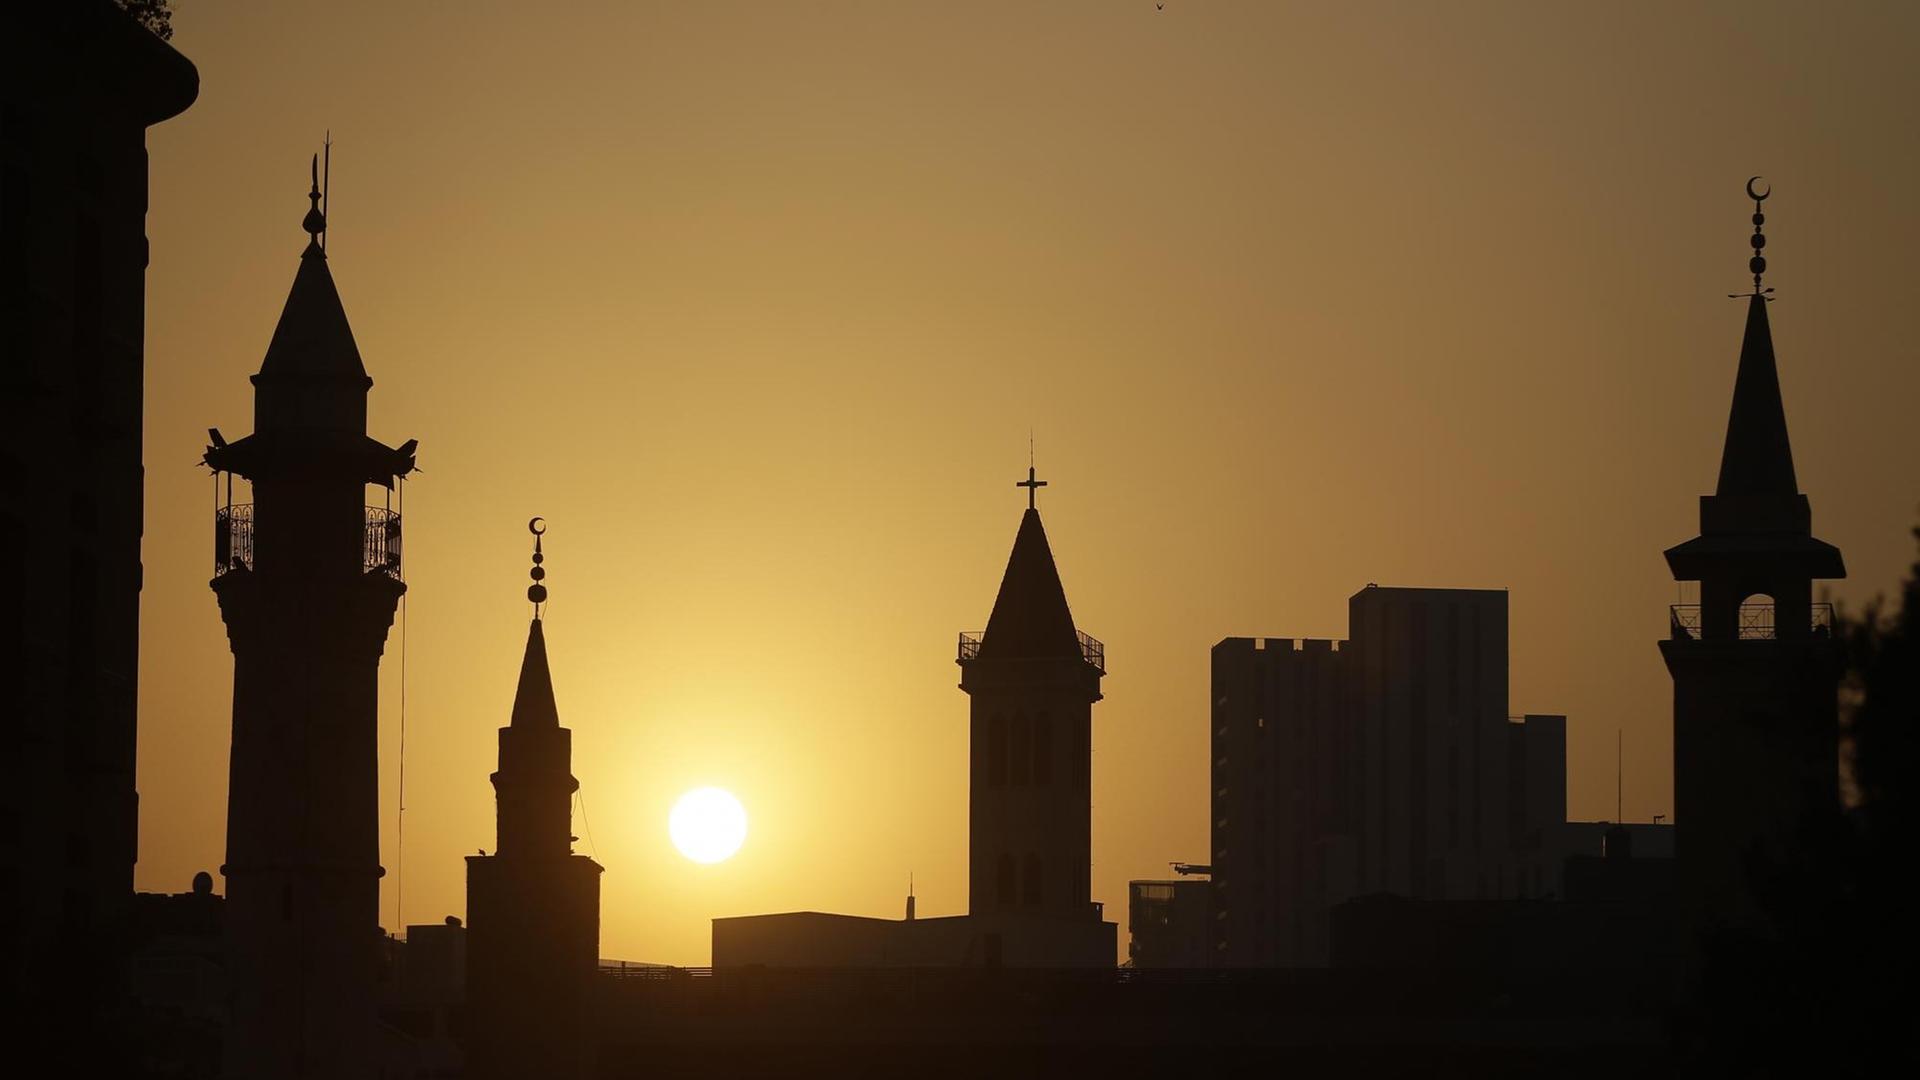 Die Dächer von Kirchen und Moscheen heben sich als Silhouetten vor einem Sonnenuntergang ab.